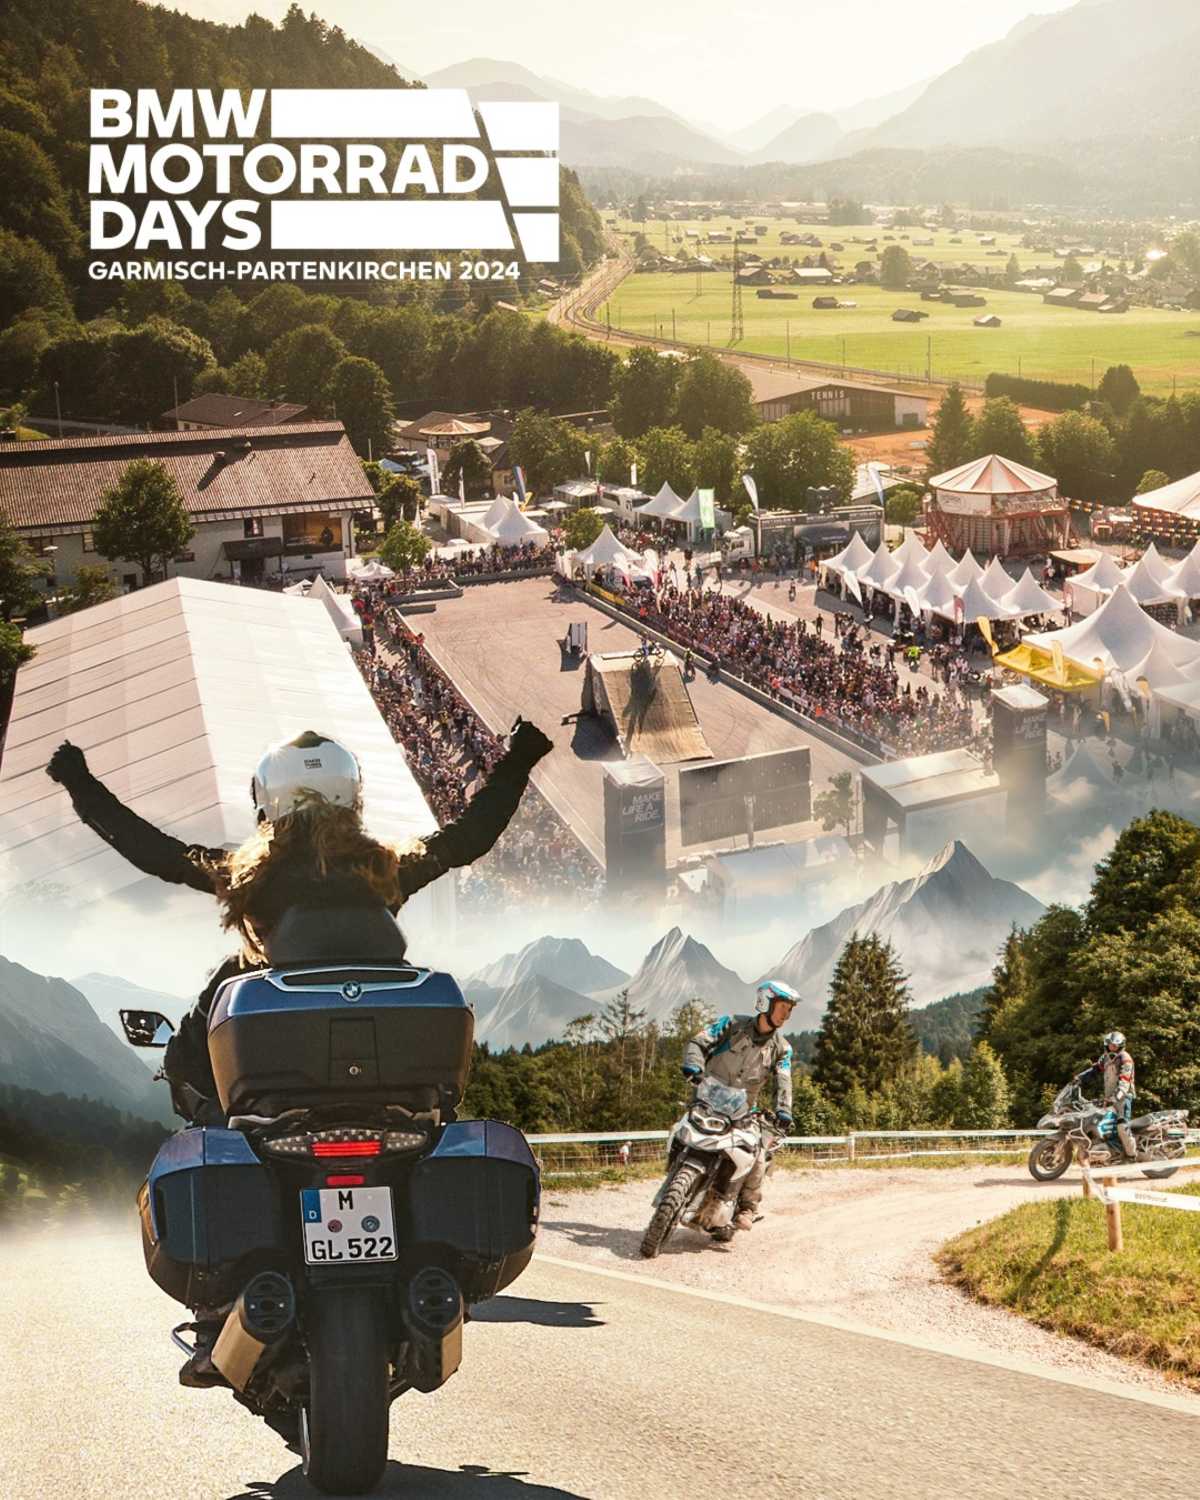 BMW Motorrad returns to Garmisch-Partenkirchen with the BMW Motorrad Days.